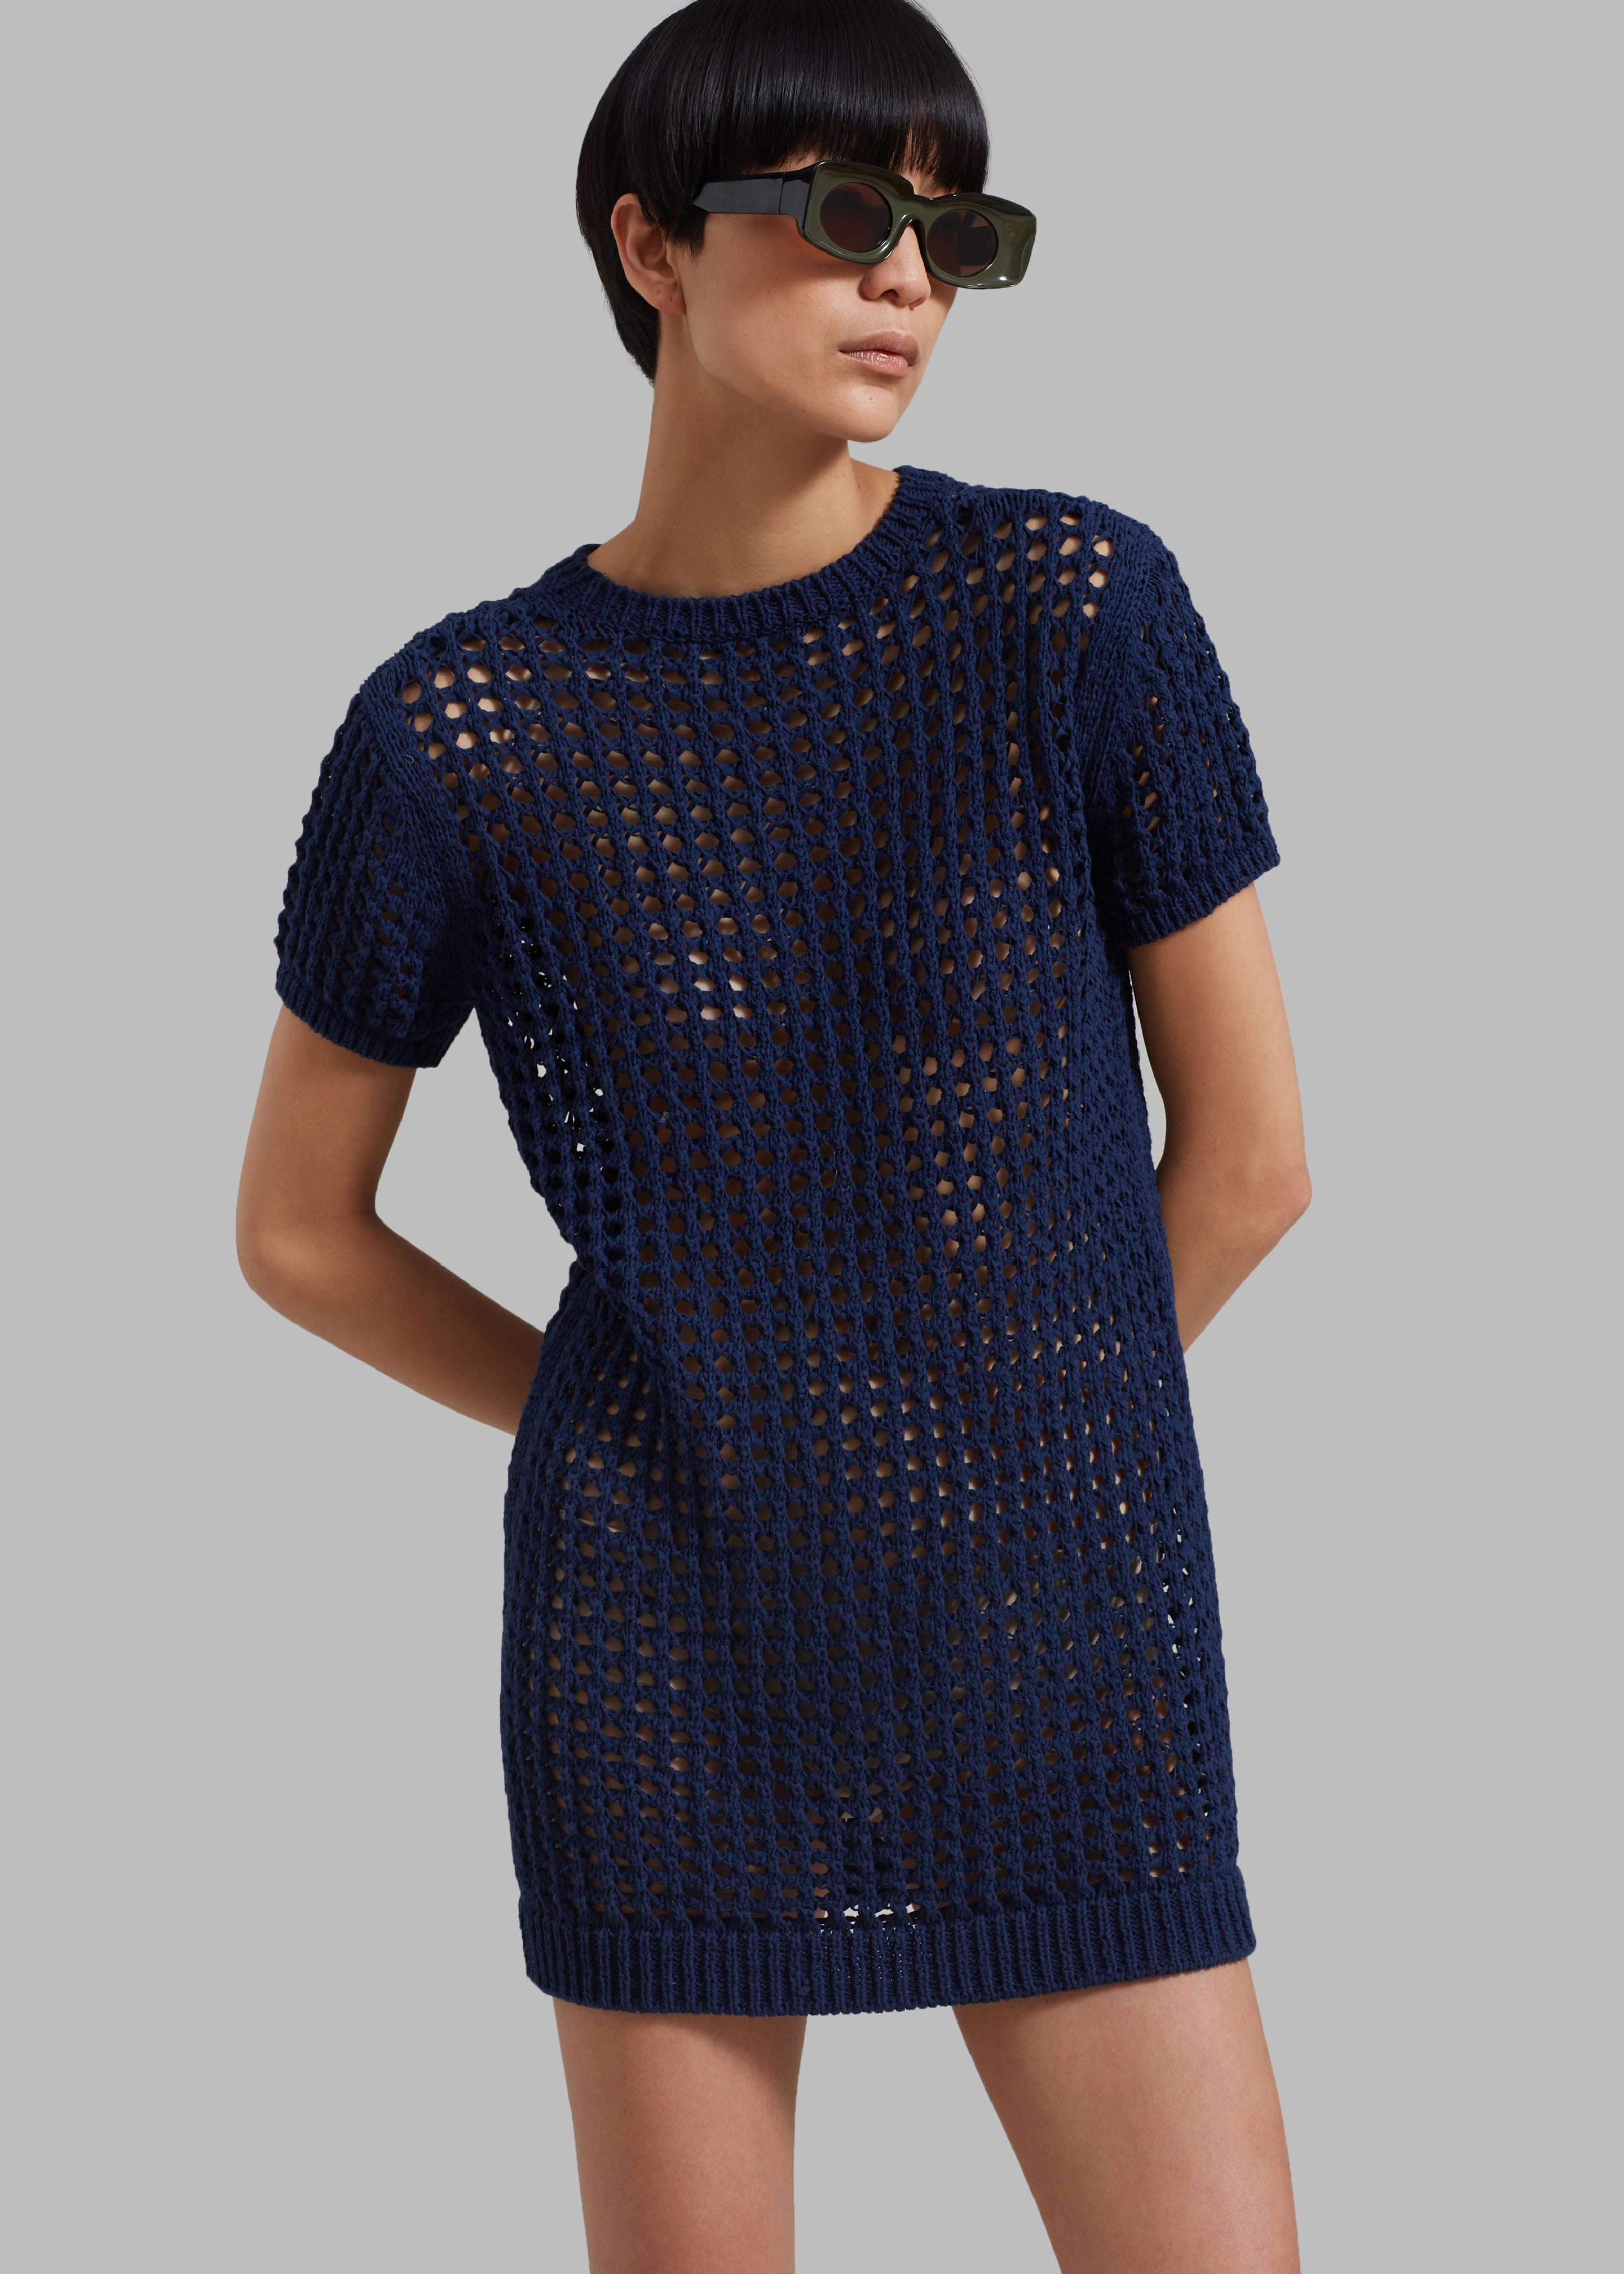 Ari Knit Mini Dress - Navy - 4